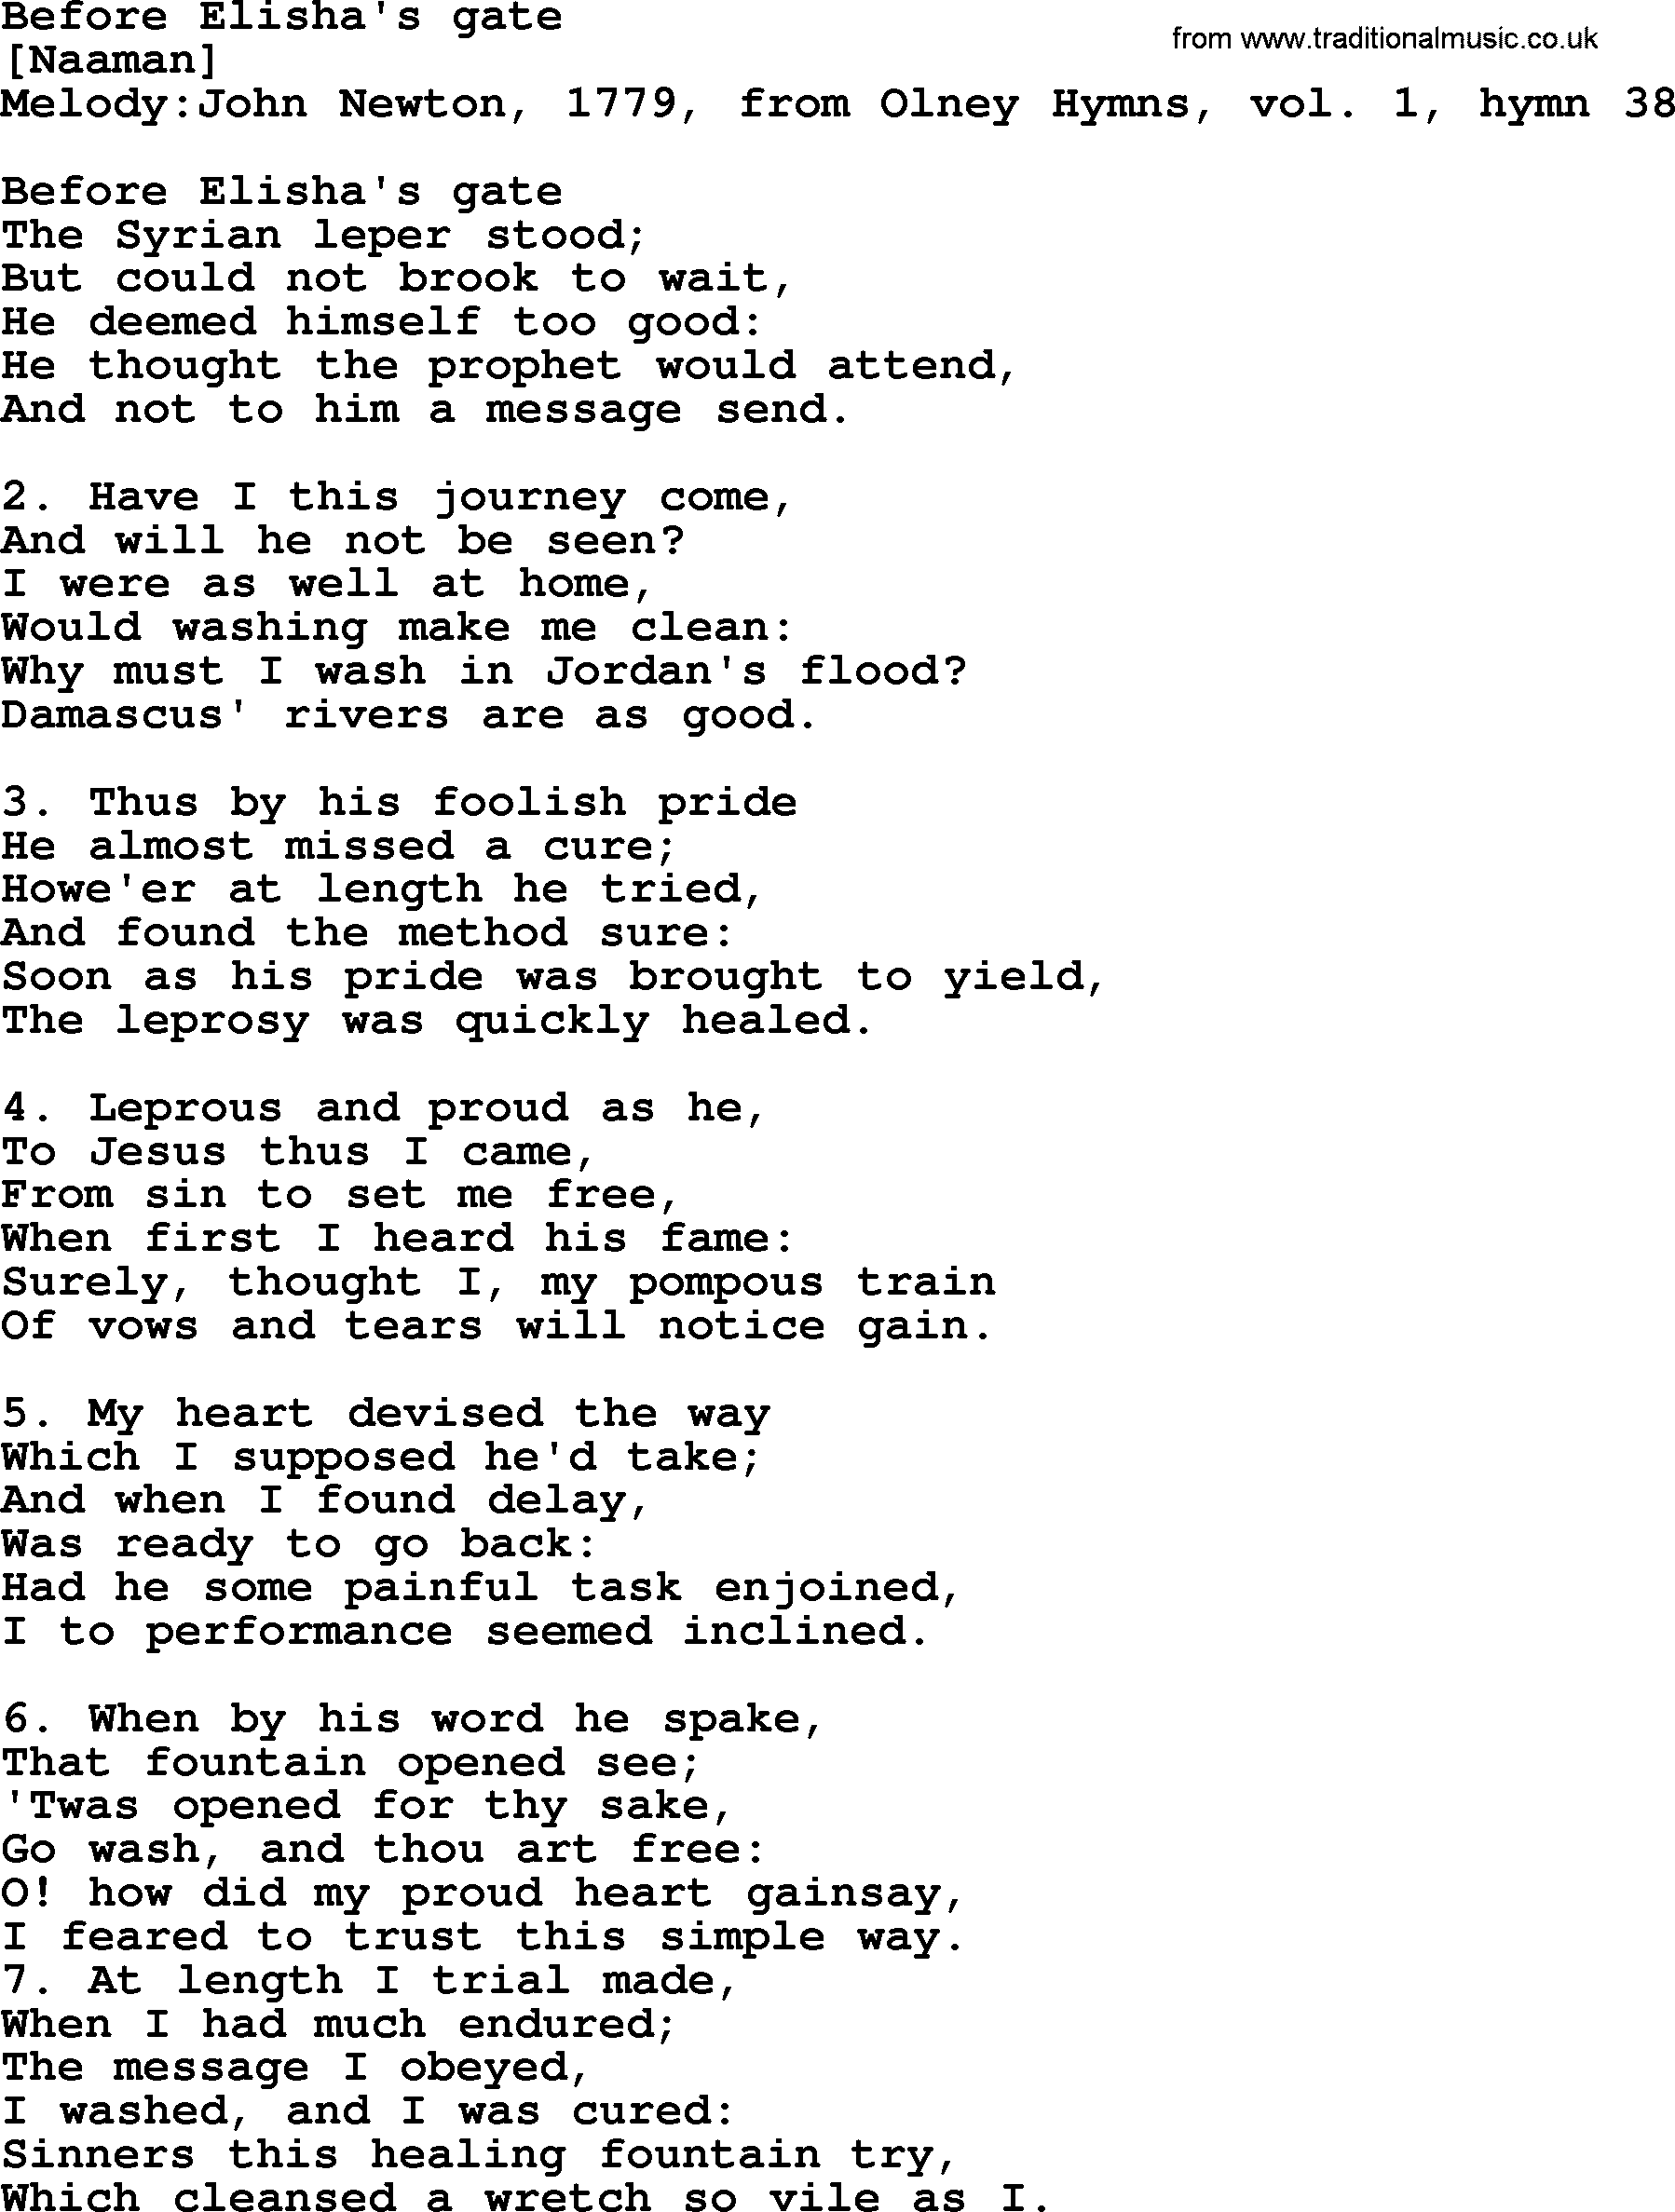 Old English Song: Before Elisha's Gate lyrics